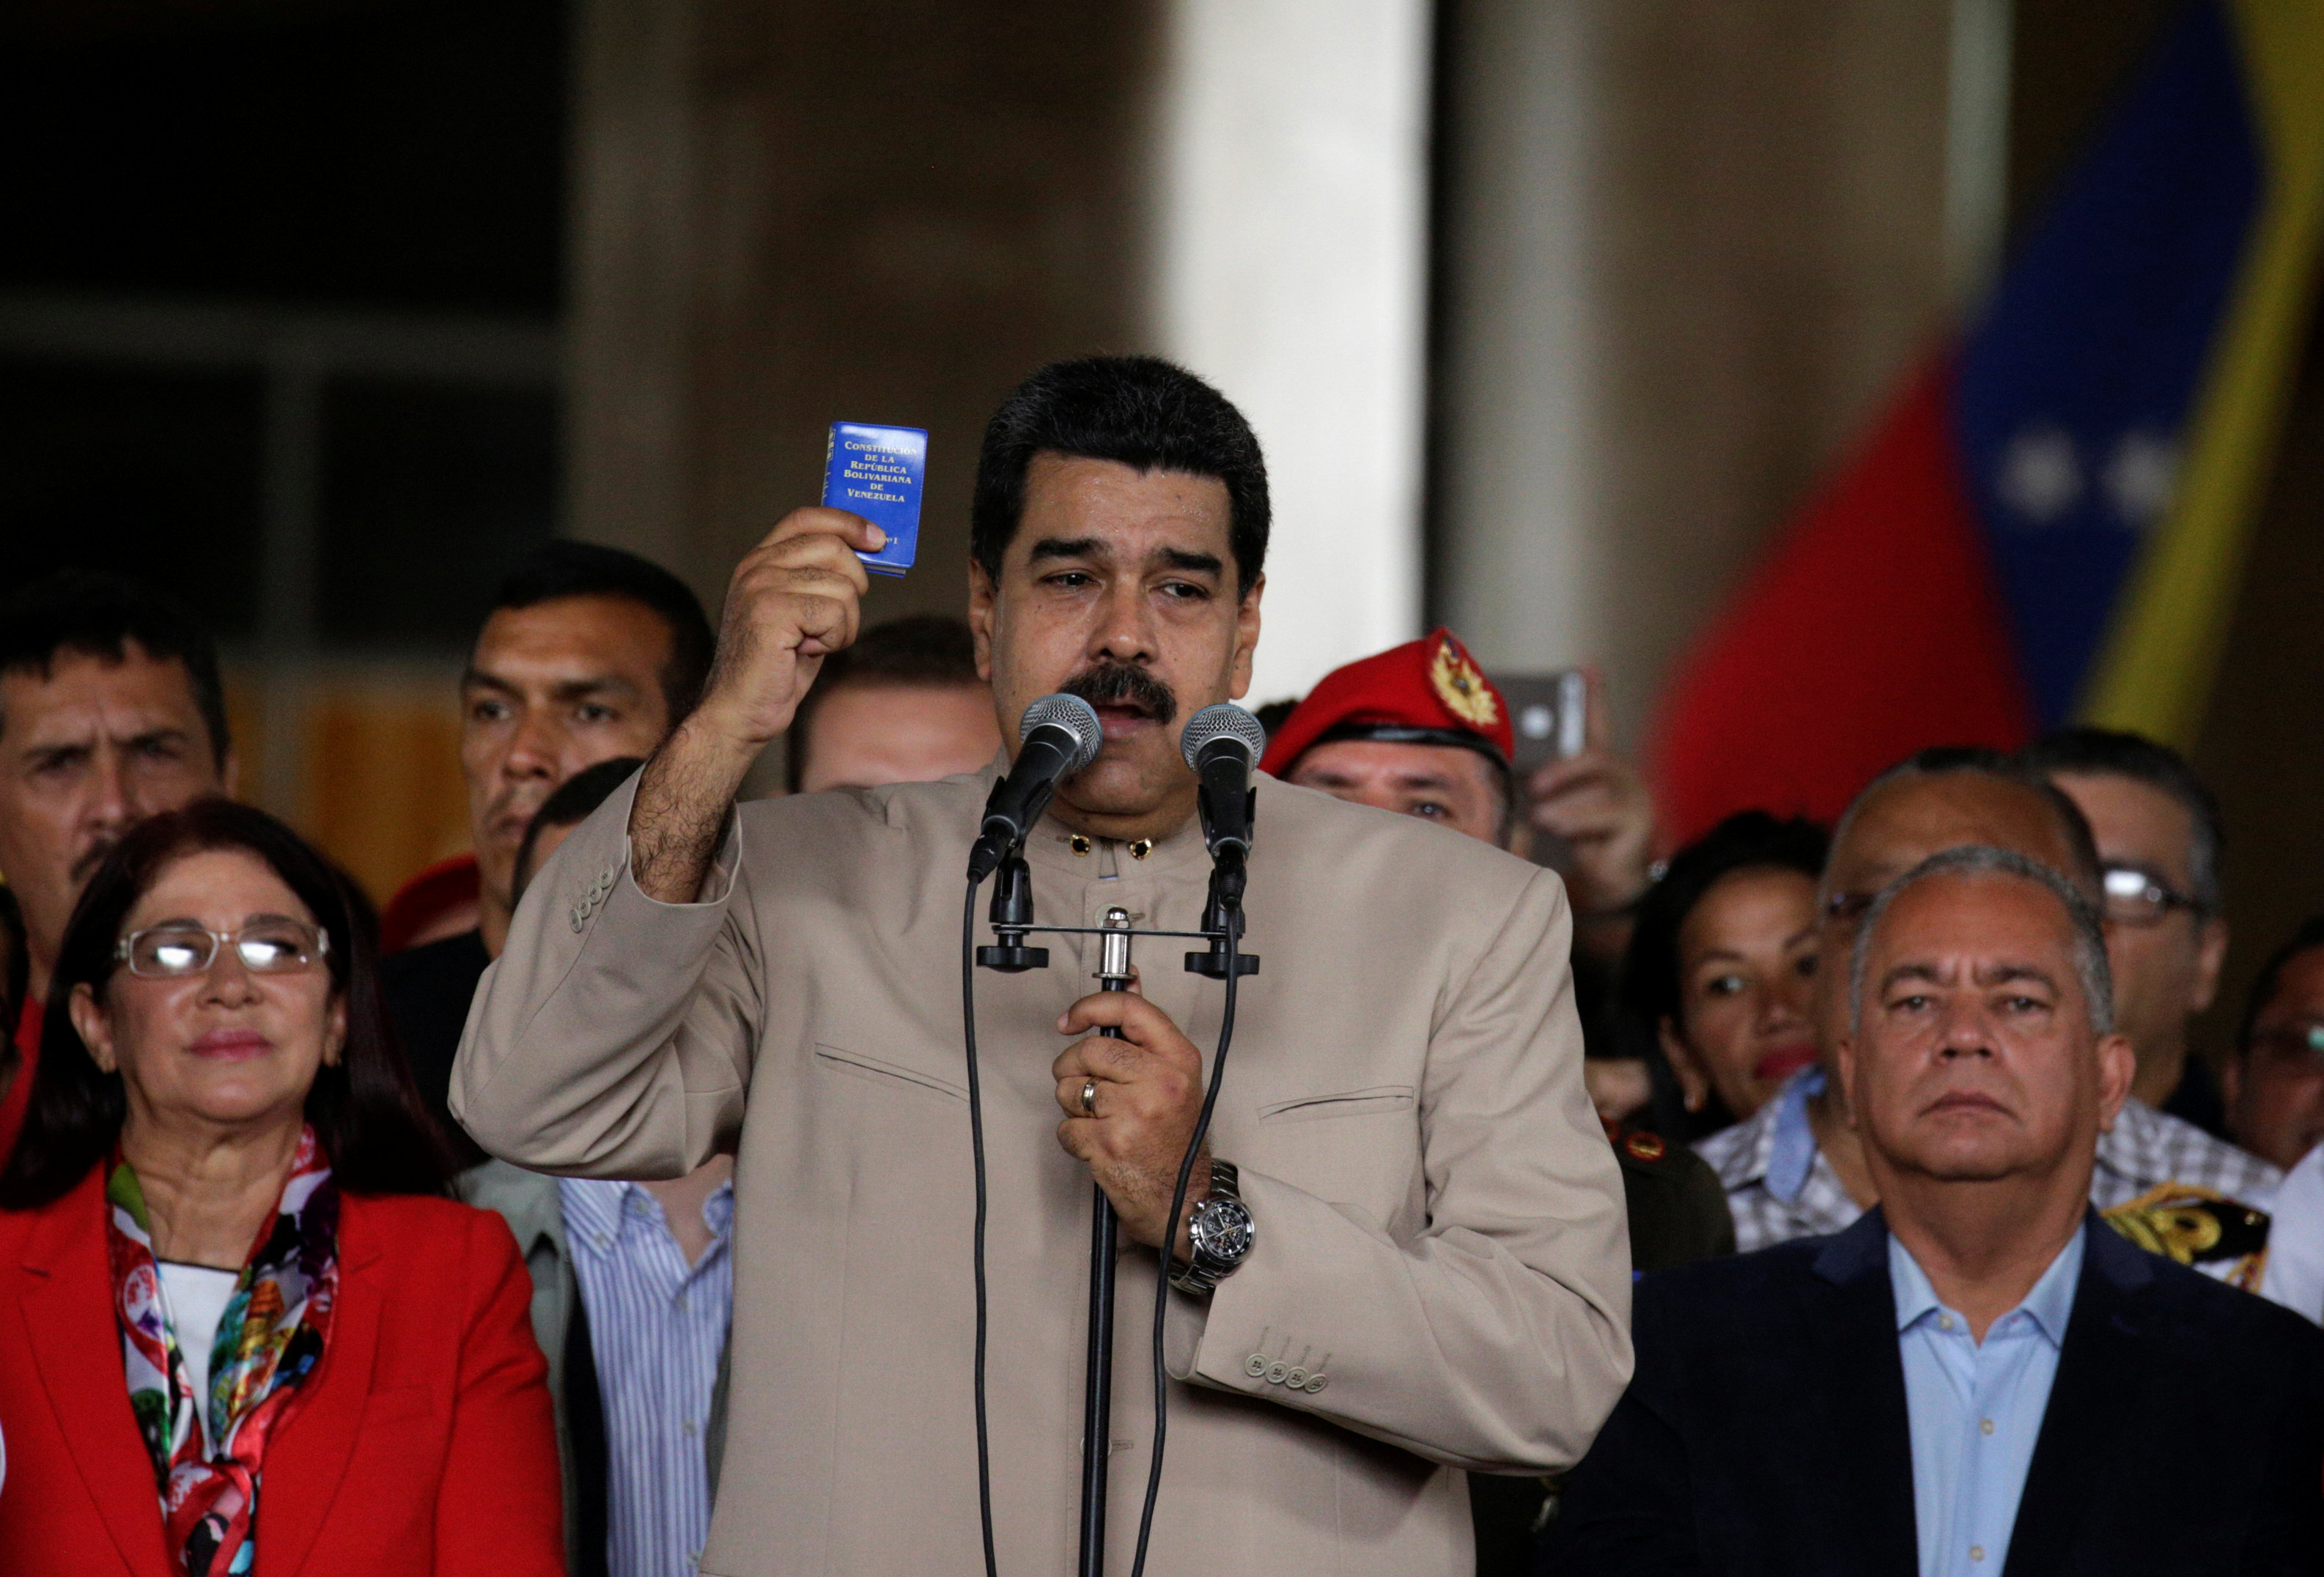 El mandatario venezolano rubricó este decreto en medio de los hechos violentos promovidos por sectores de la derecha.